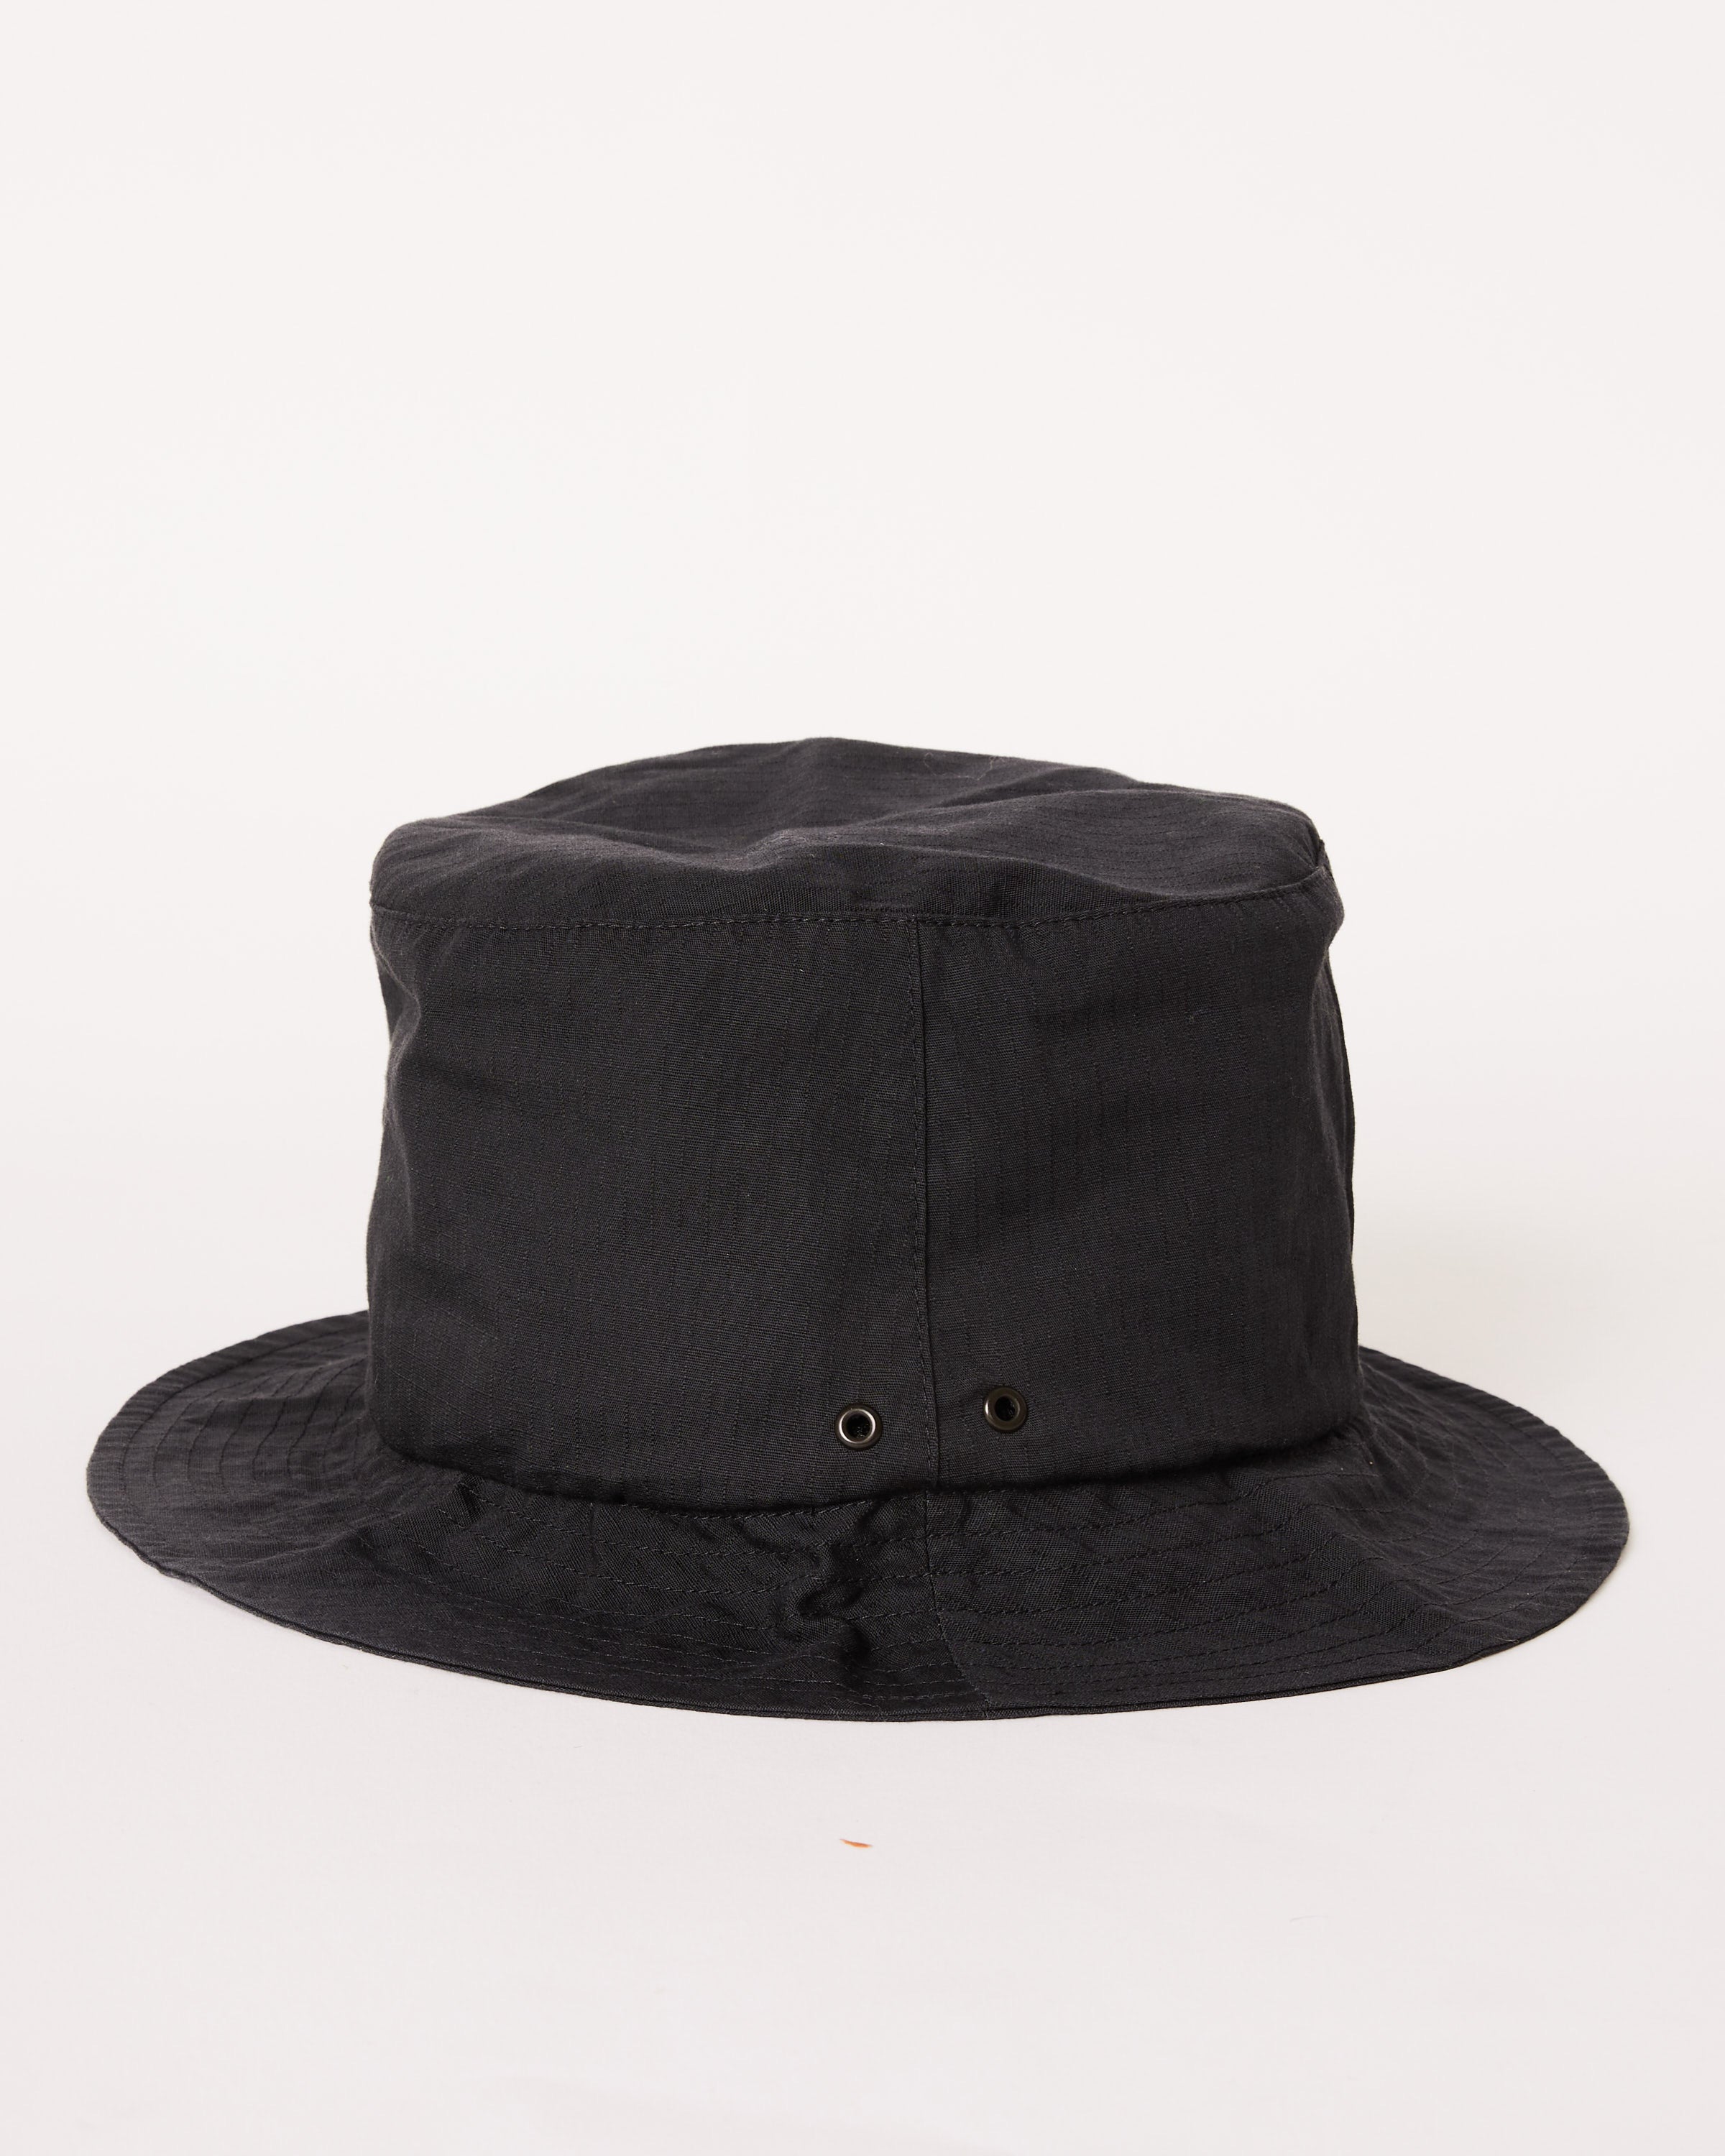 Takibi Light Ripstop Hat in Black